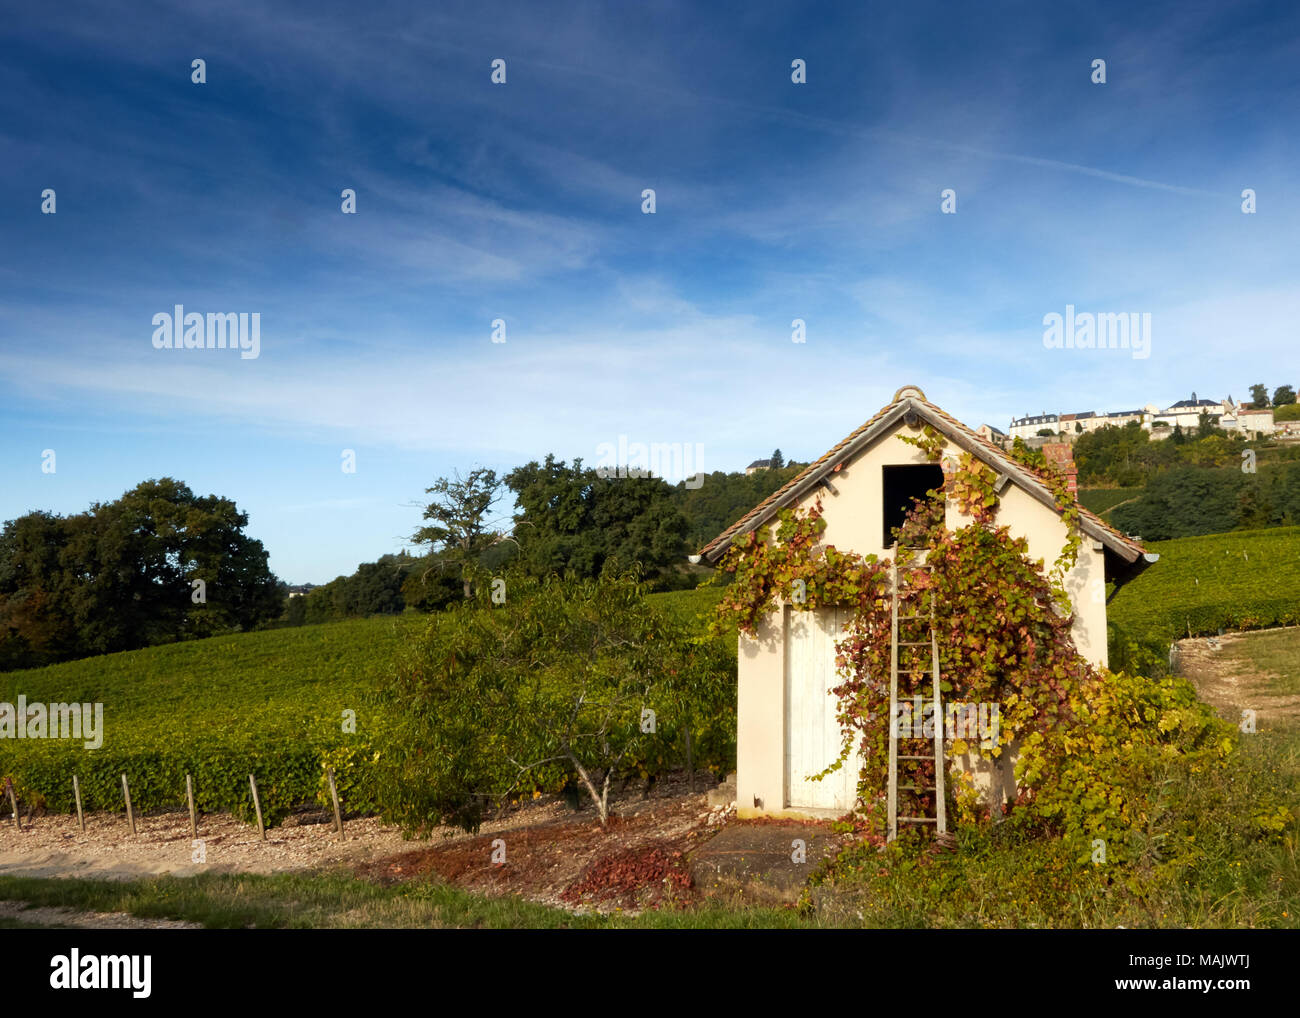 Image de hut dans le champ de vignes, Sancerre, France Banque D'Images